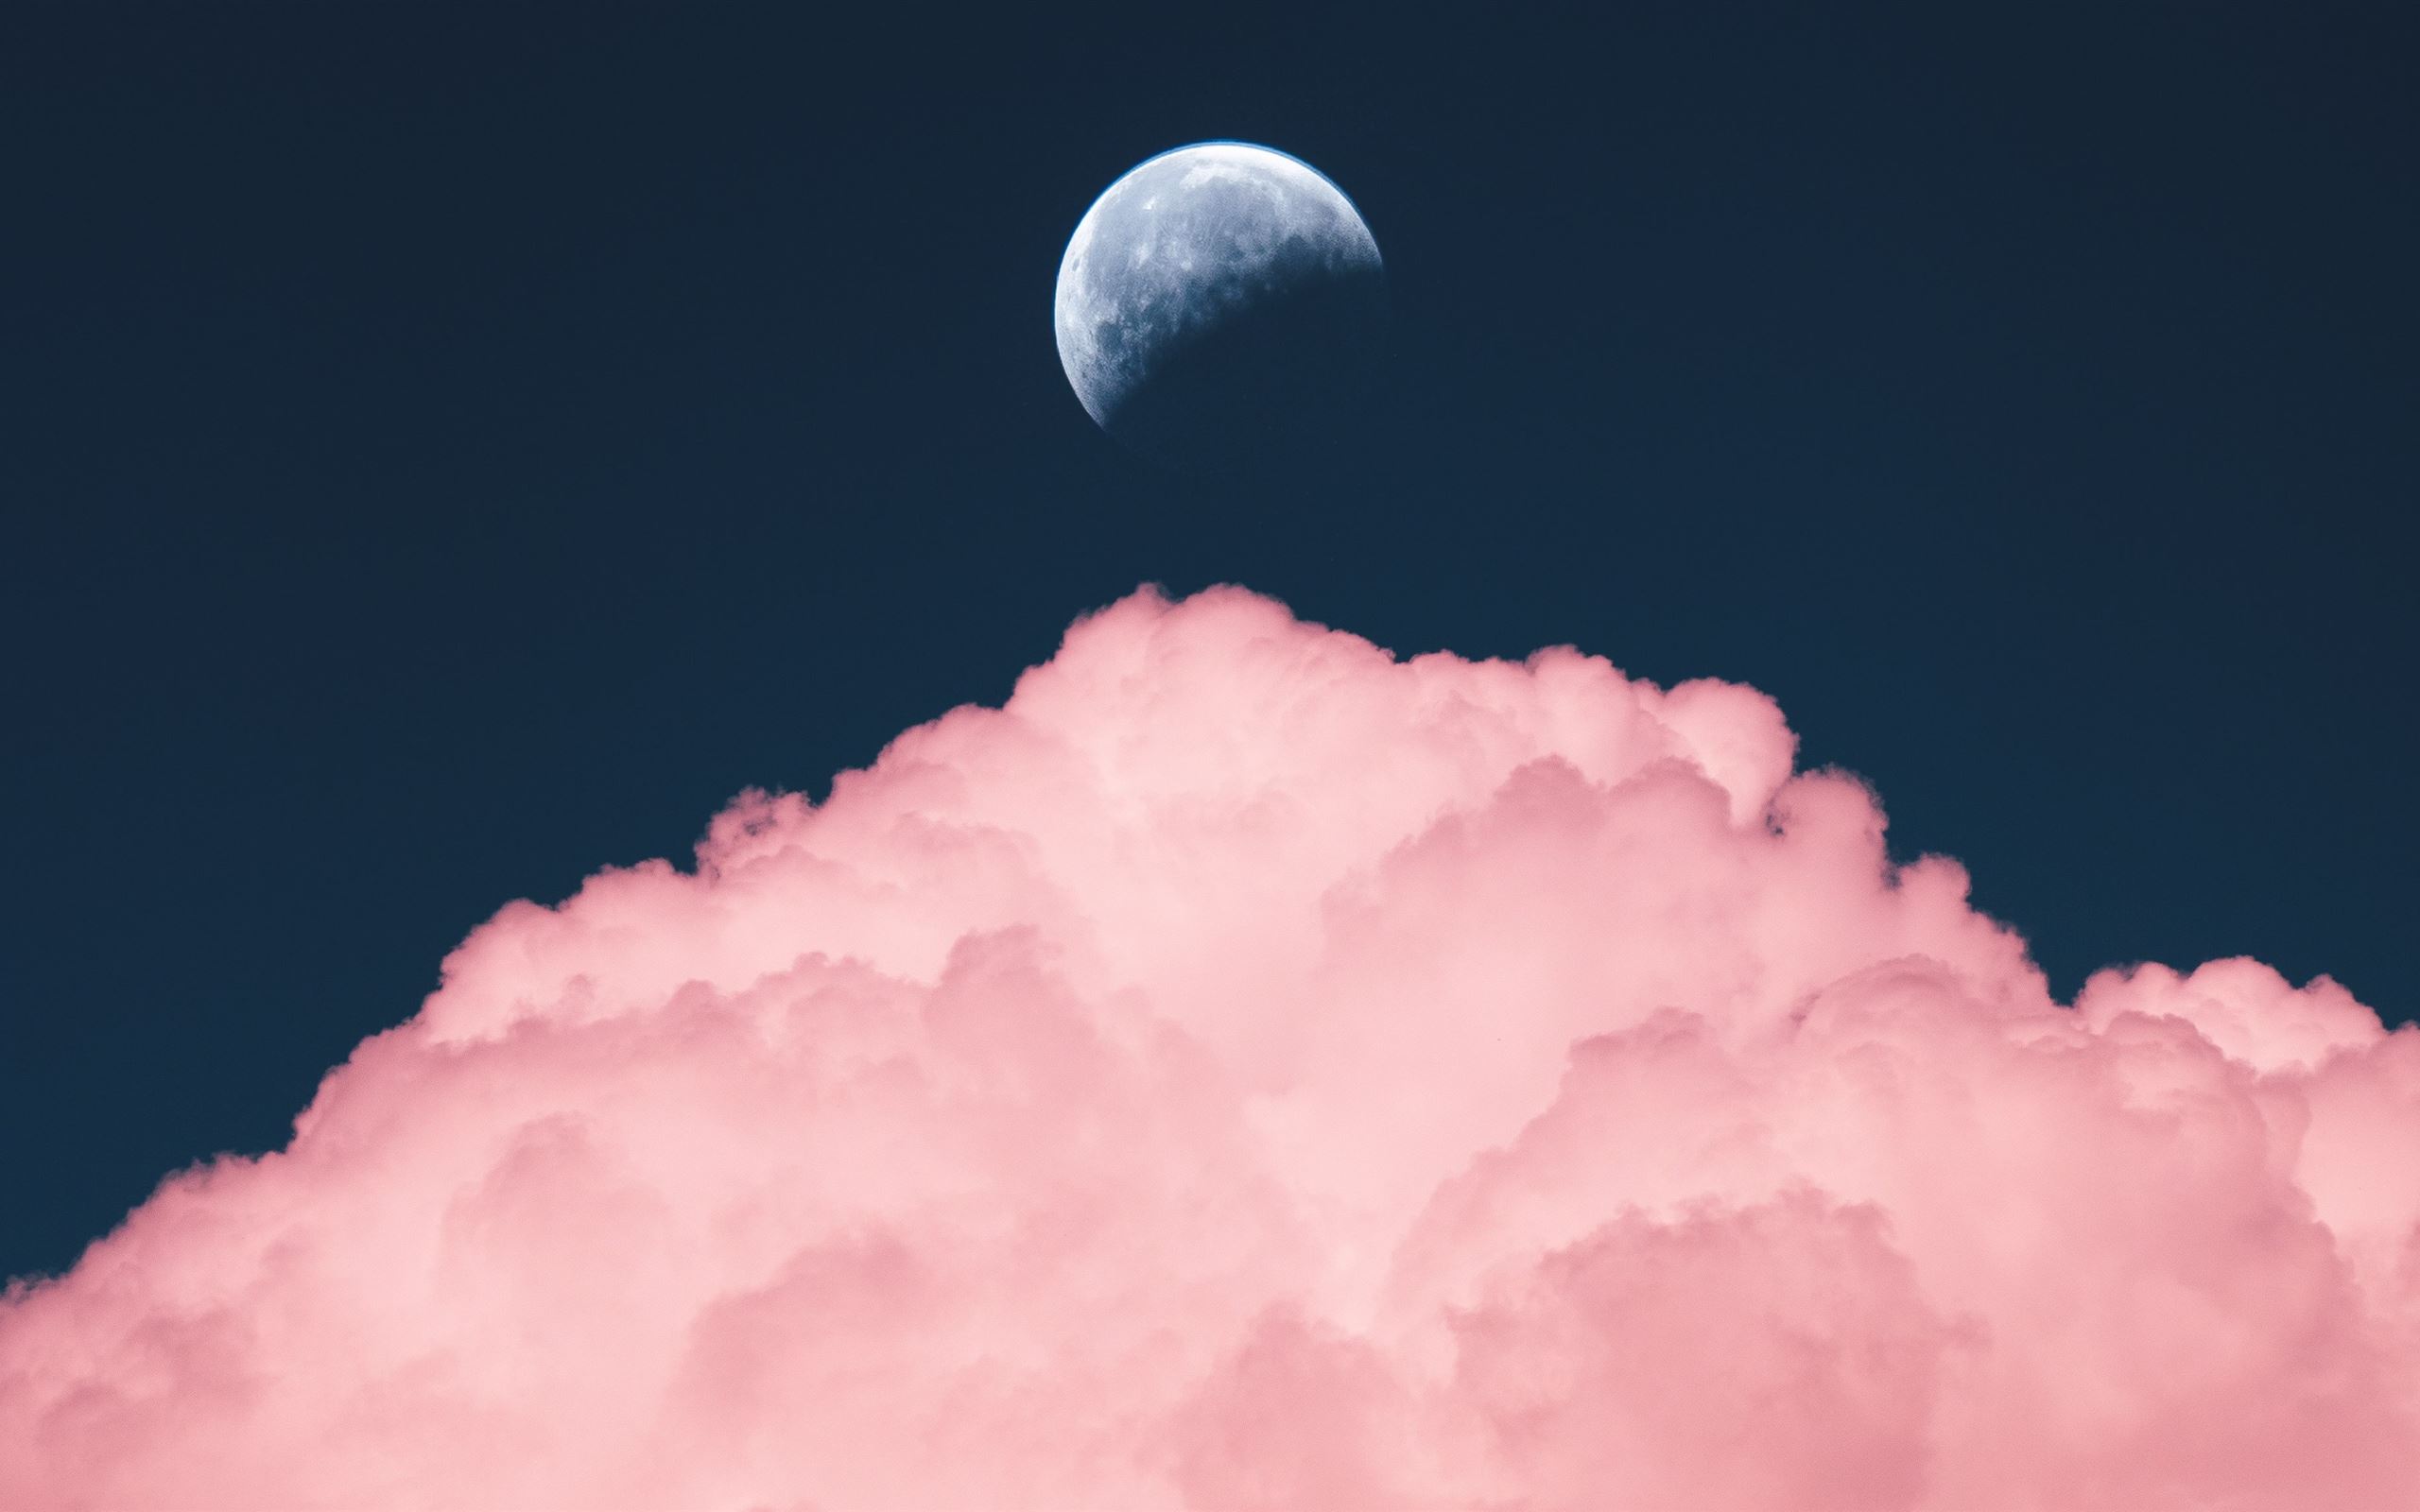 Chào mừng đến với hình nền mặt trăng tím thẩm mỹ cho iMac! Nếu bạn đang tìm kiếm một hình nền đẹp mắt để thay đổi không gian làm việc của mình, đây chính là lựa chọn hoàn hảo. Hình ảnh tím mộng mơ của mặt trăng sẽ đem lại một sự mới mẻ cho dàn máy tính của bạn.